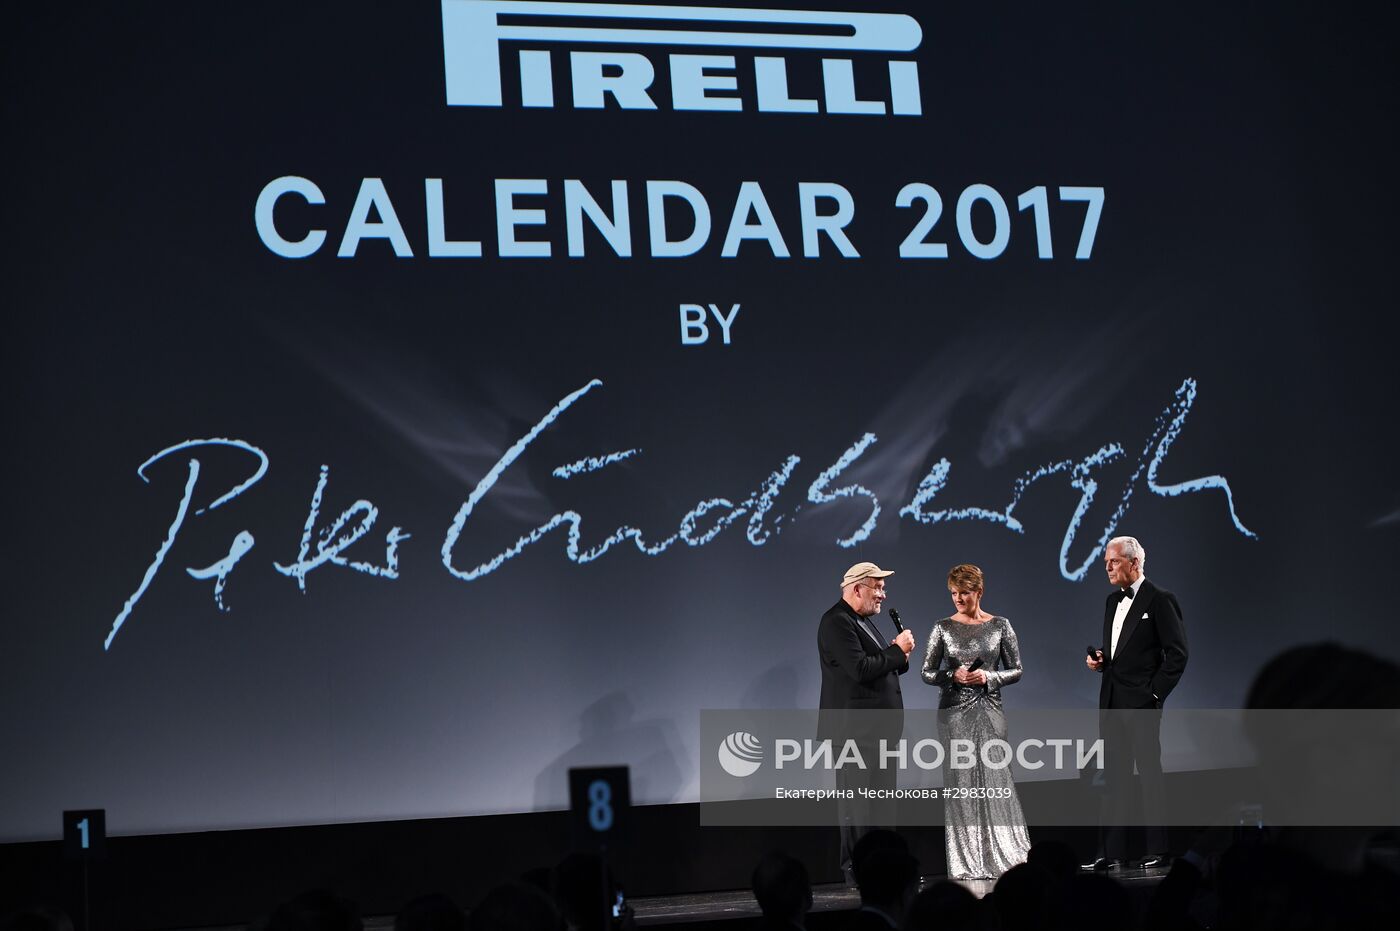 Презентация календаря Pirelli 2017